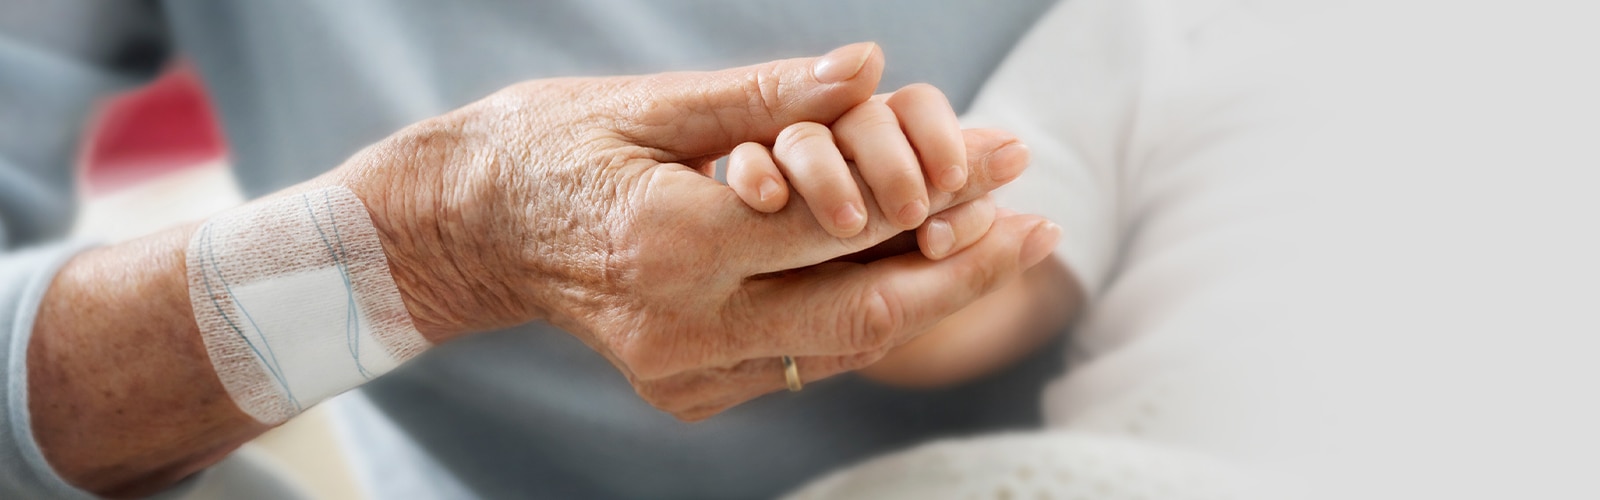 Seorang wanita lansia dengan plester luka menempel di lengan kanannya sedang memegang tangan bayi.  